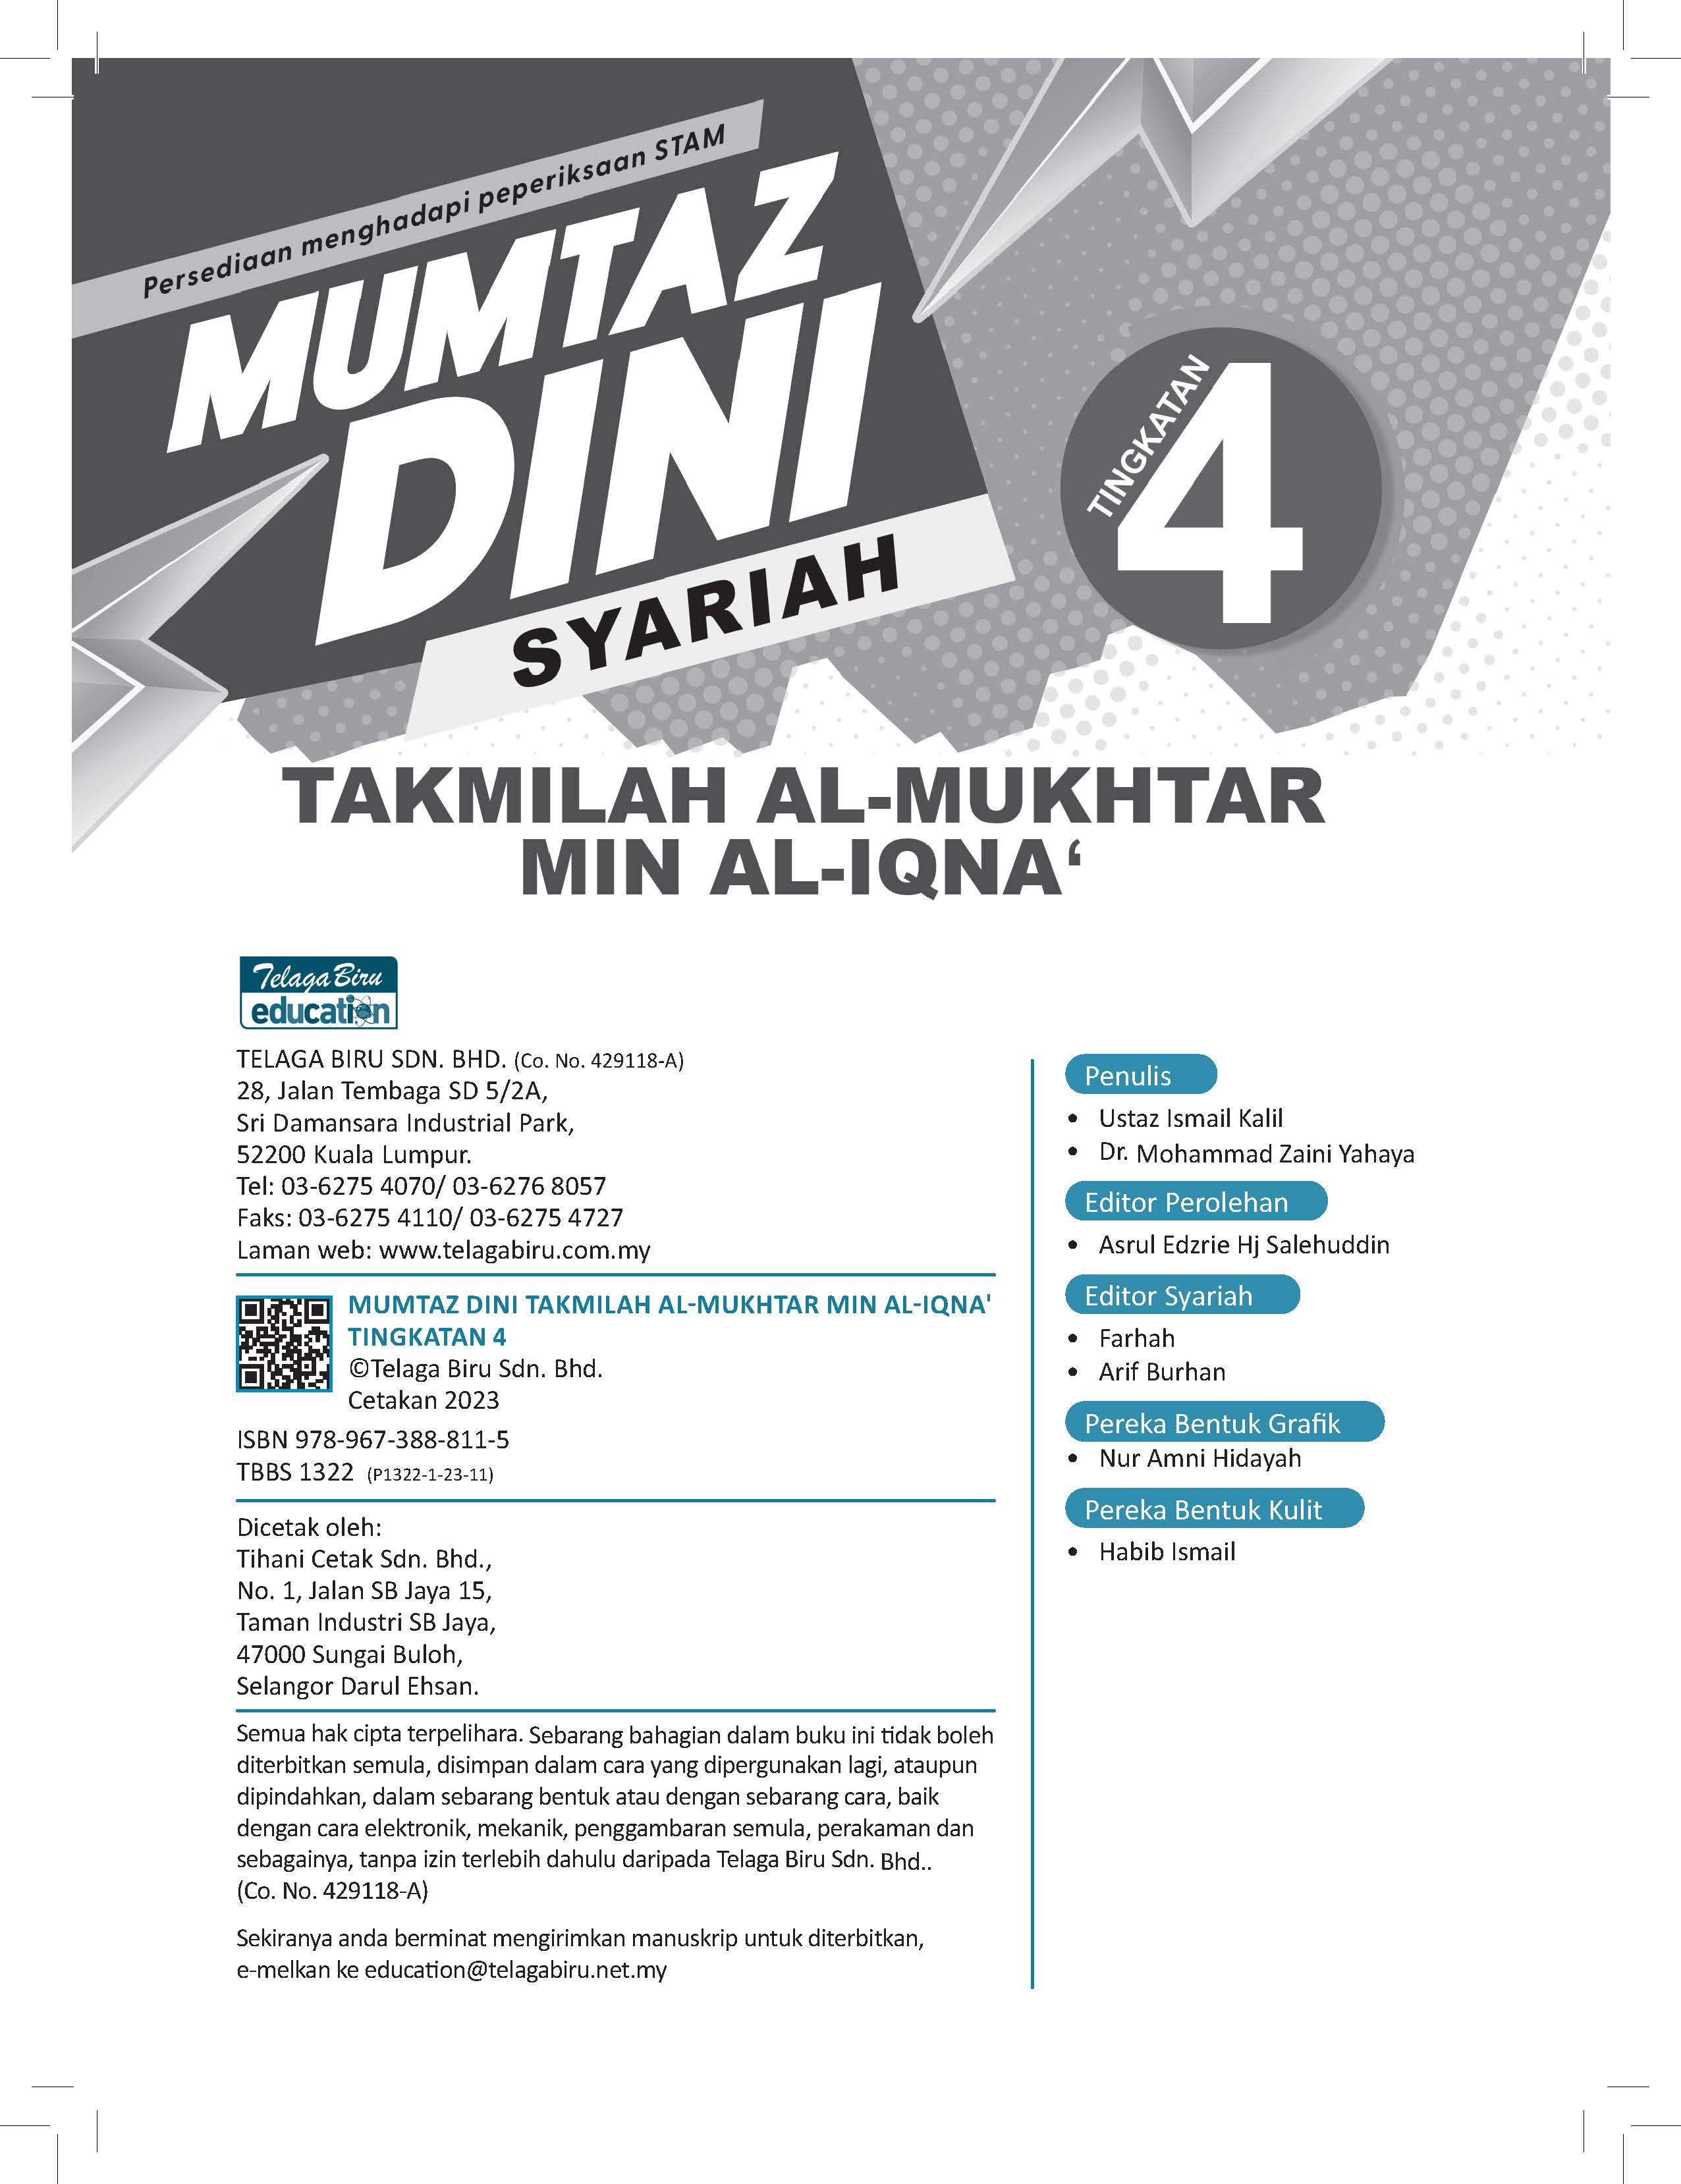 Mumtaz Dini Syariah Takmilah Al-Mukhtar  Min Al-Iqna’ Tingkatan 4 - (TBBS1322)